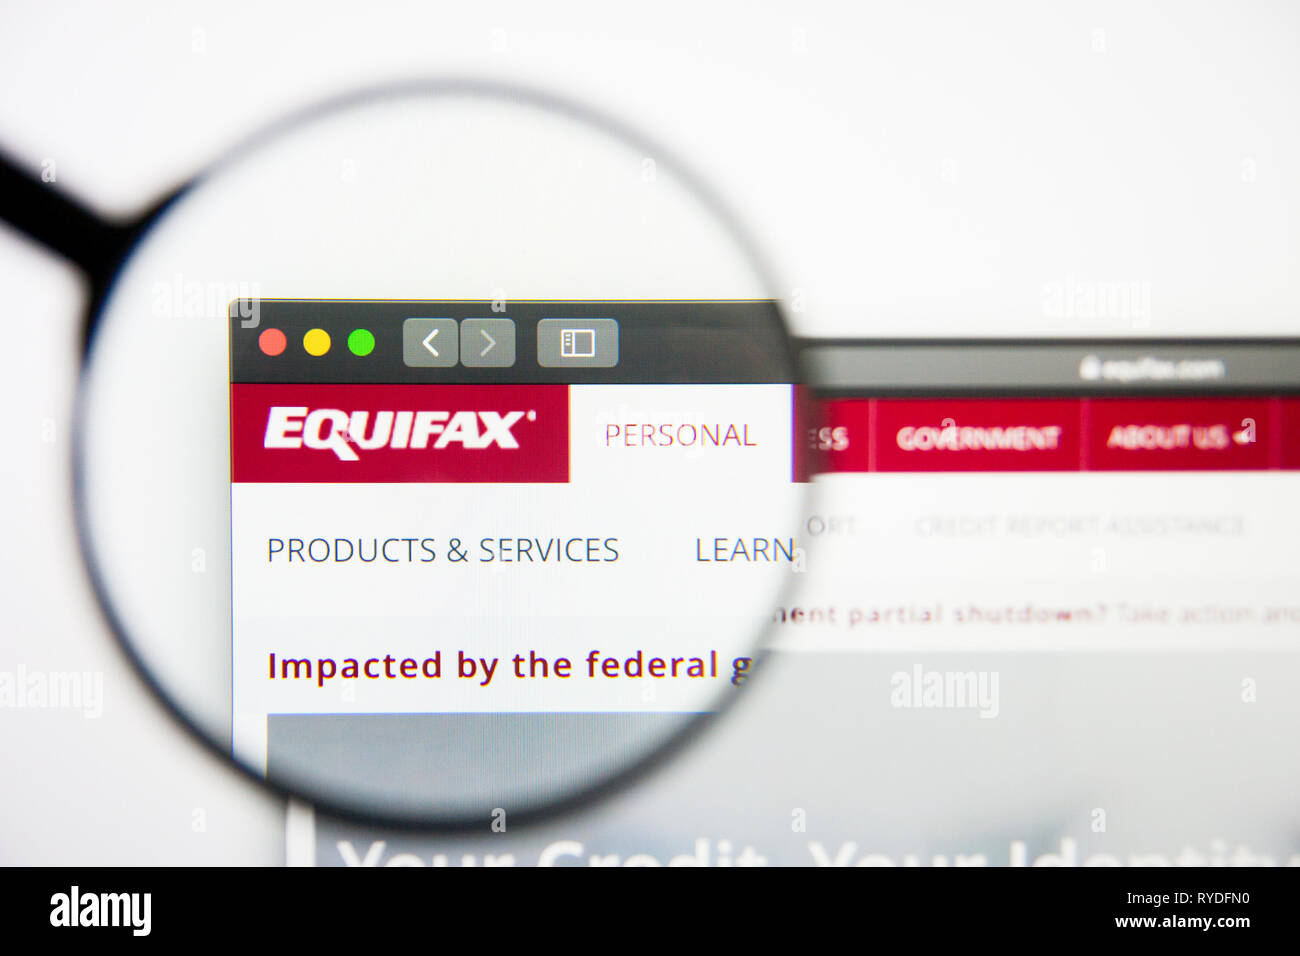 Los Angeles, Californie, USA - 28 Février 2019 : Equifax accueil du site. Logo Equifax visible sur l'écran d'affichage, de rédaction d'illustration Banque D'Images